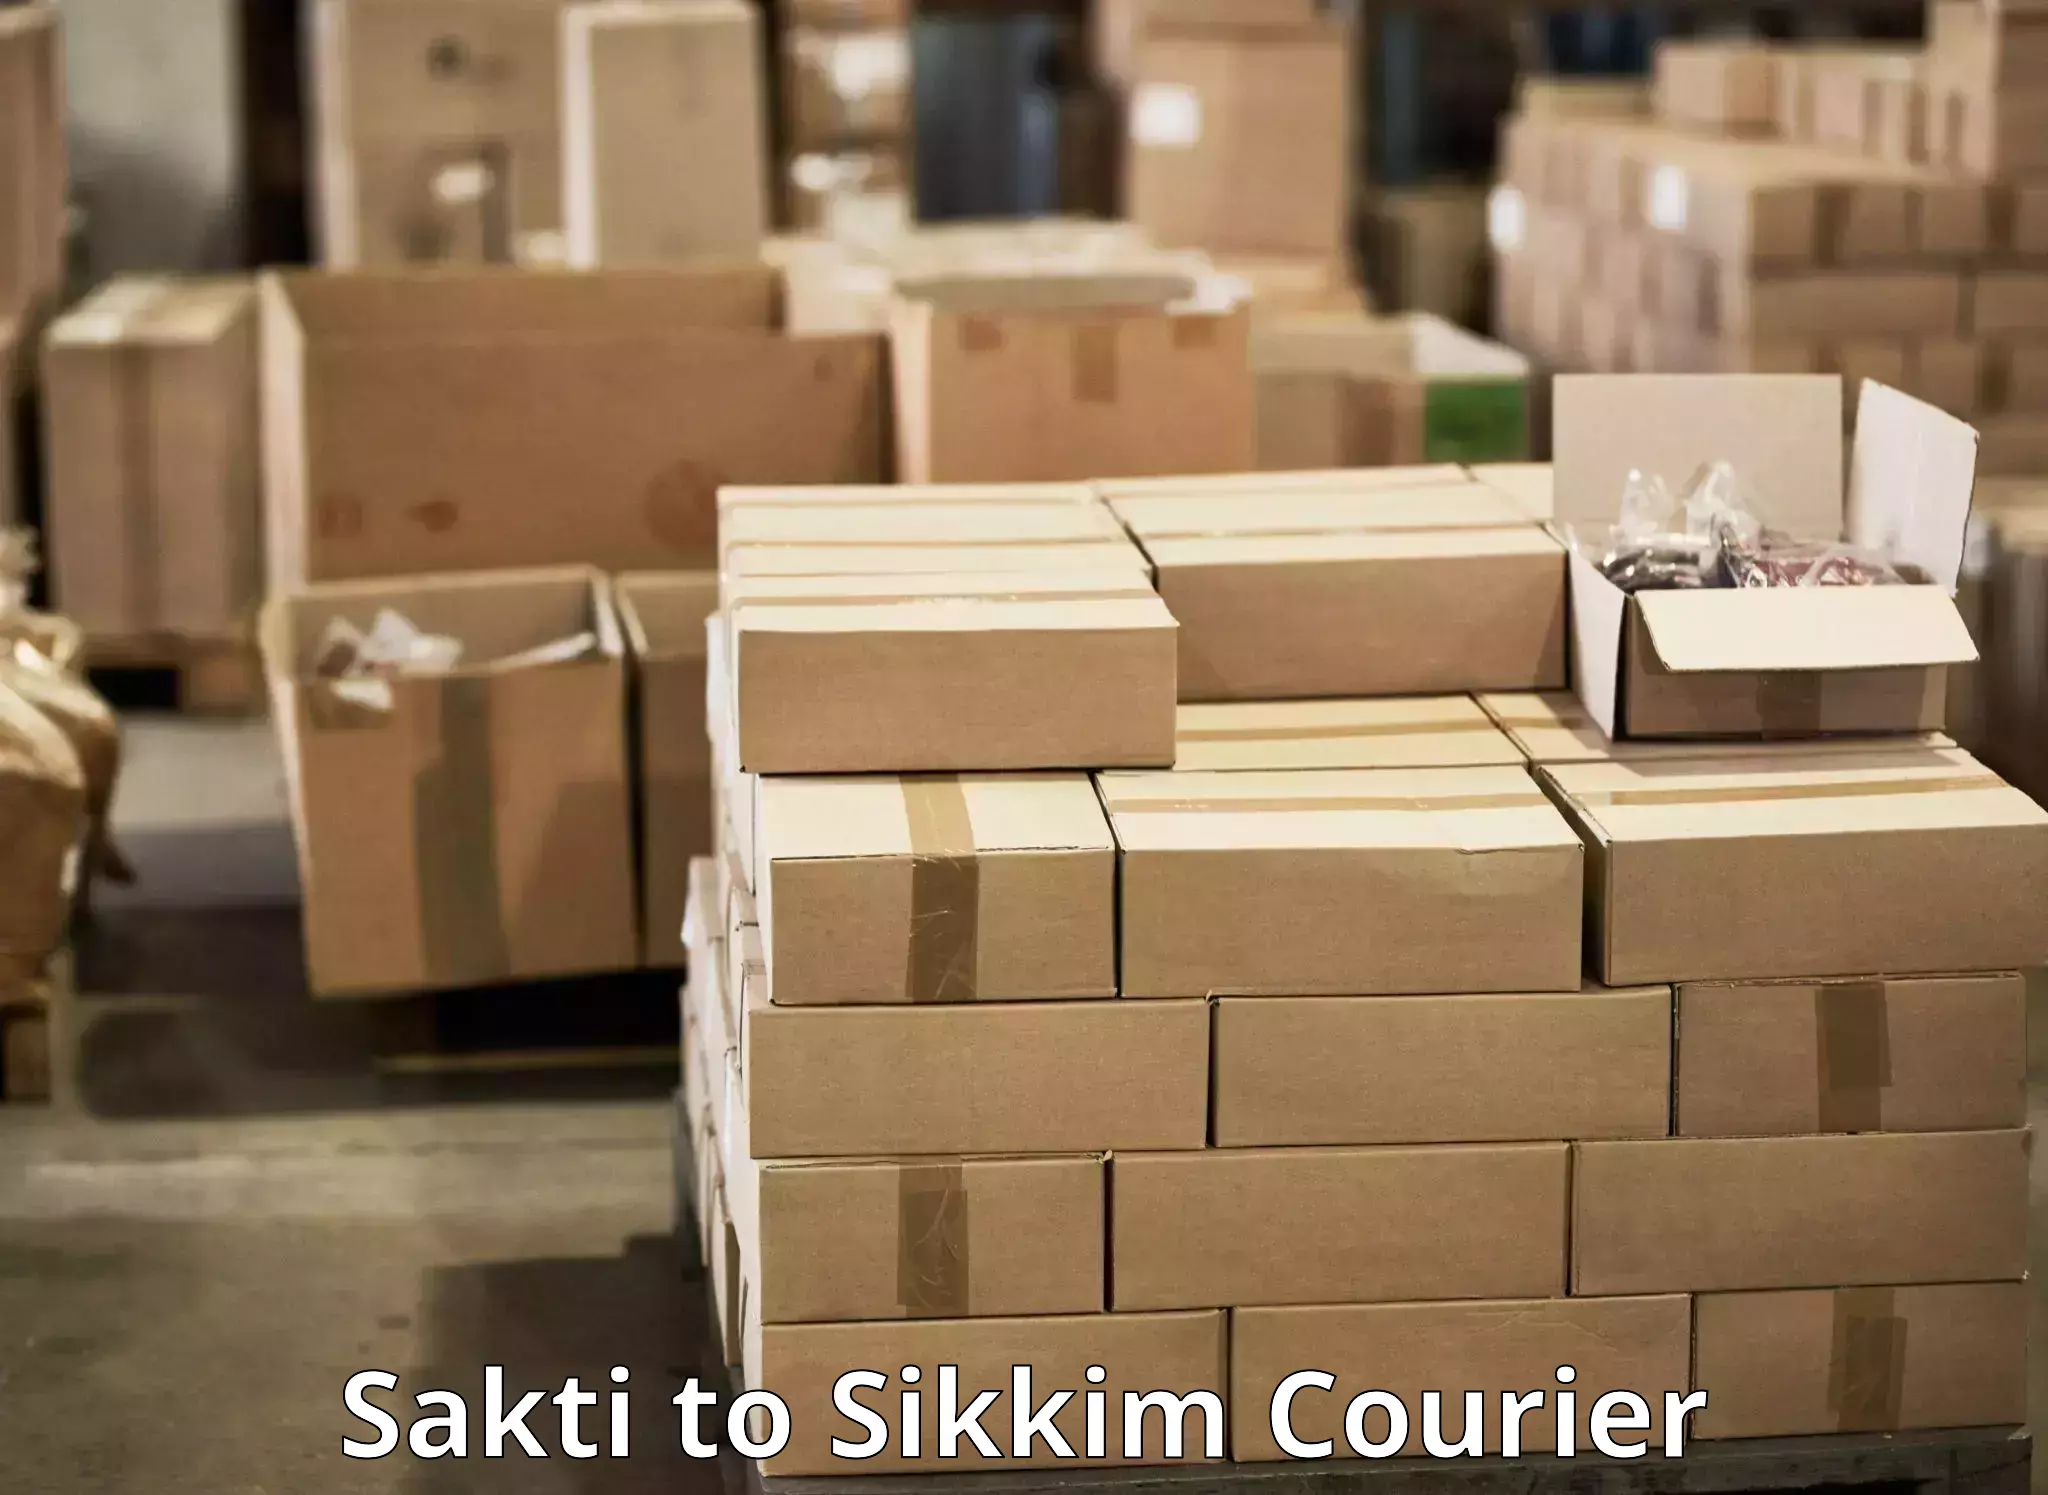 Next-day freight services Sakti to Sikkim